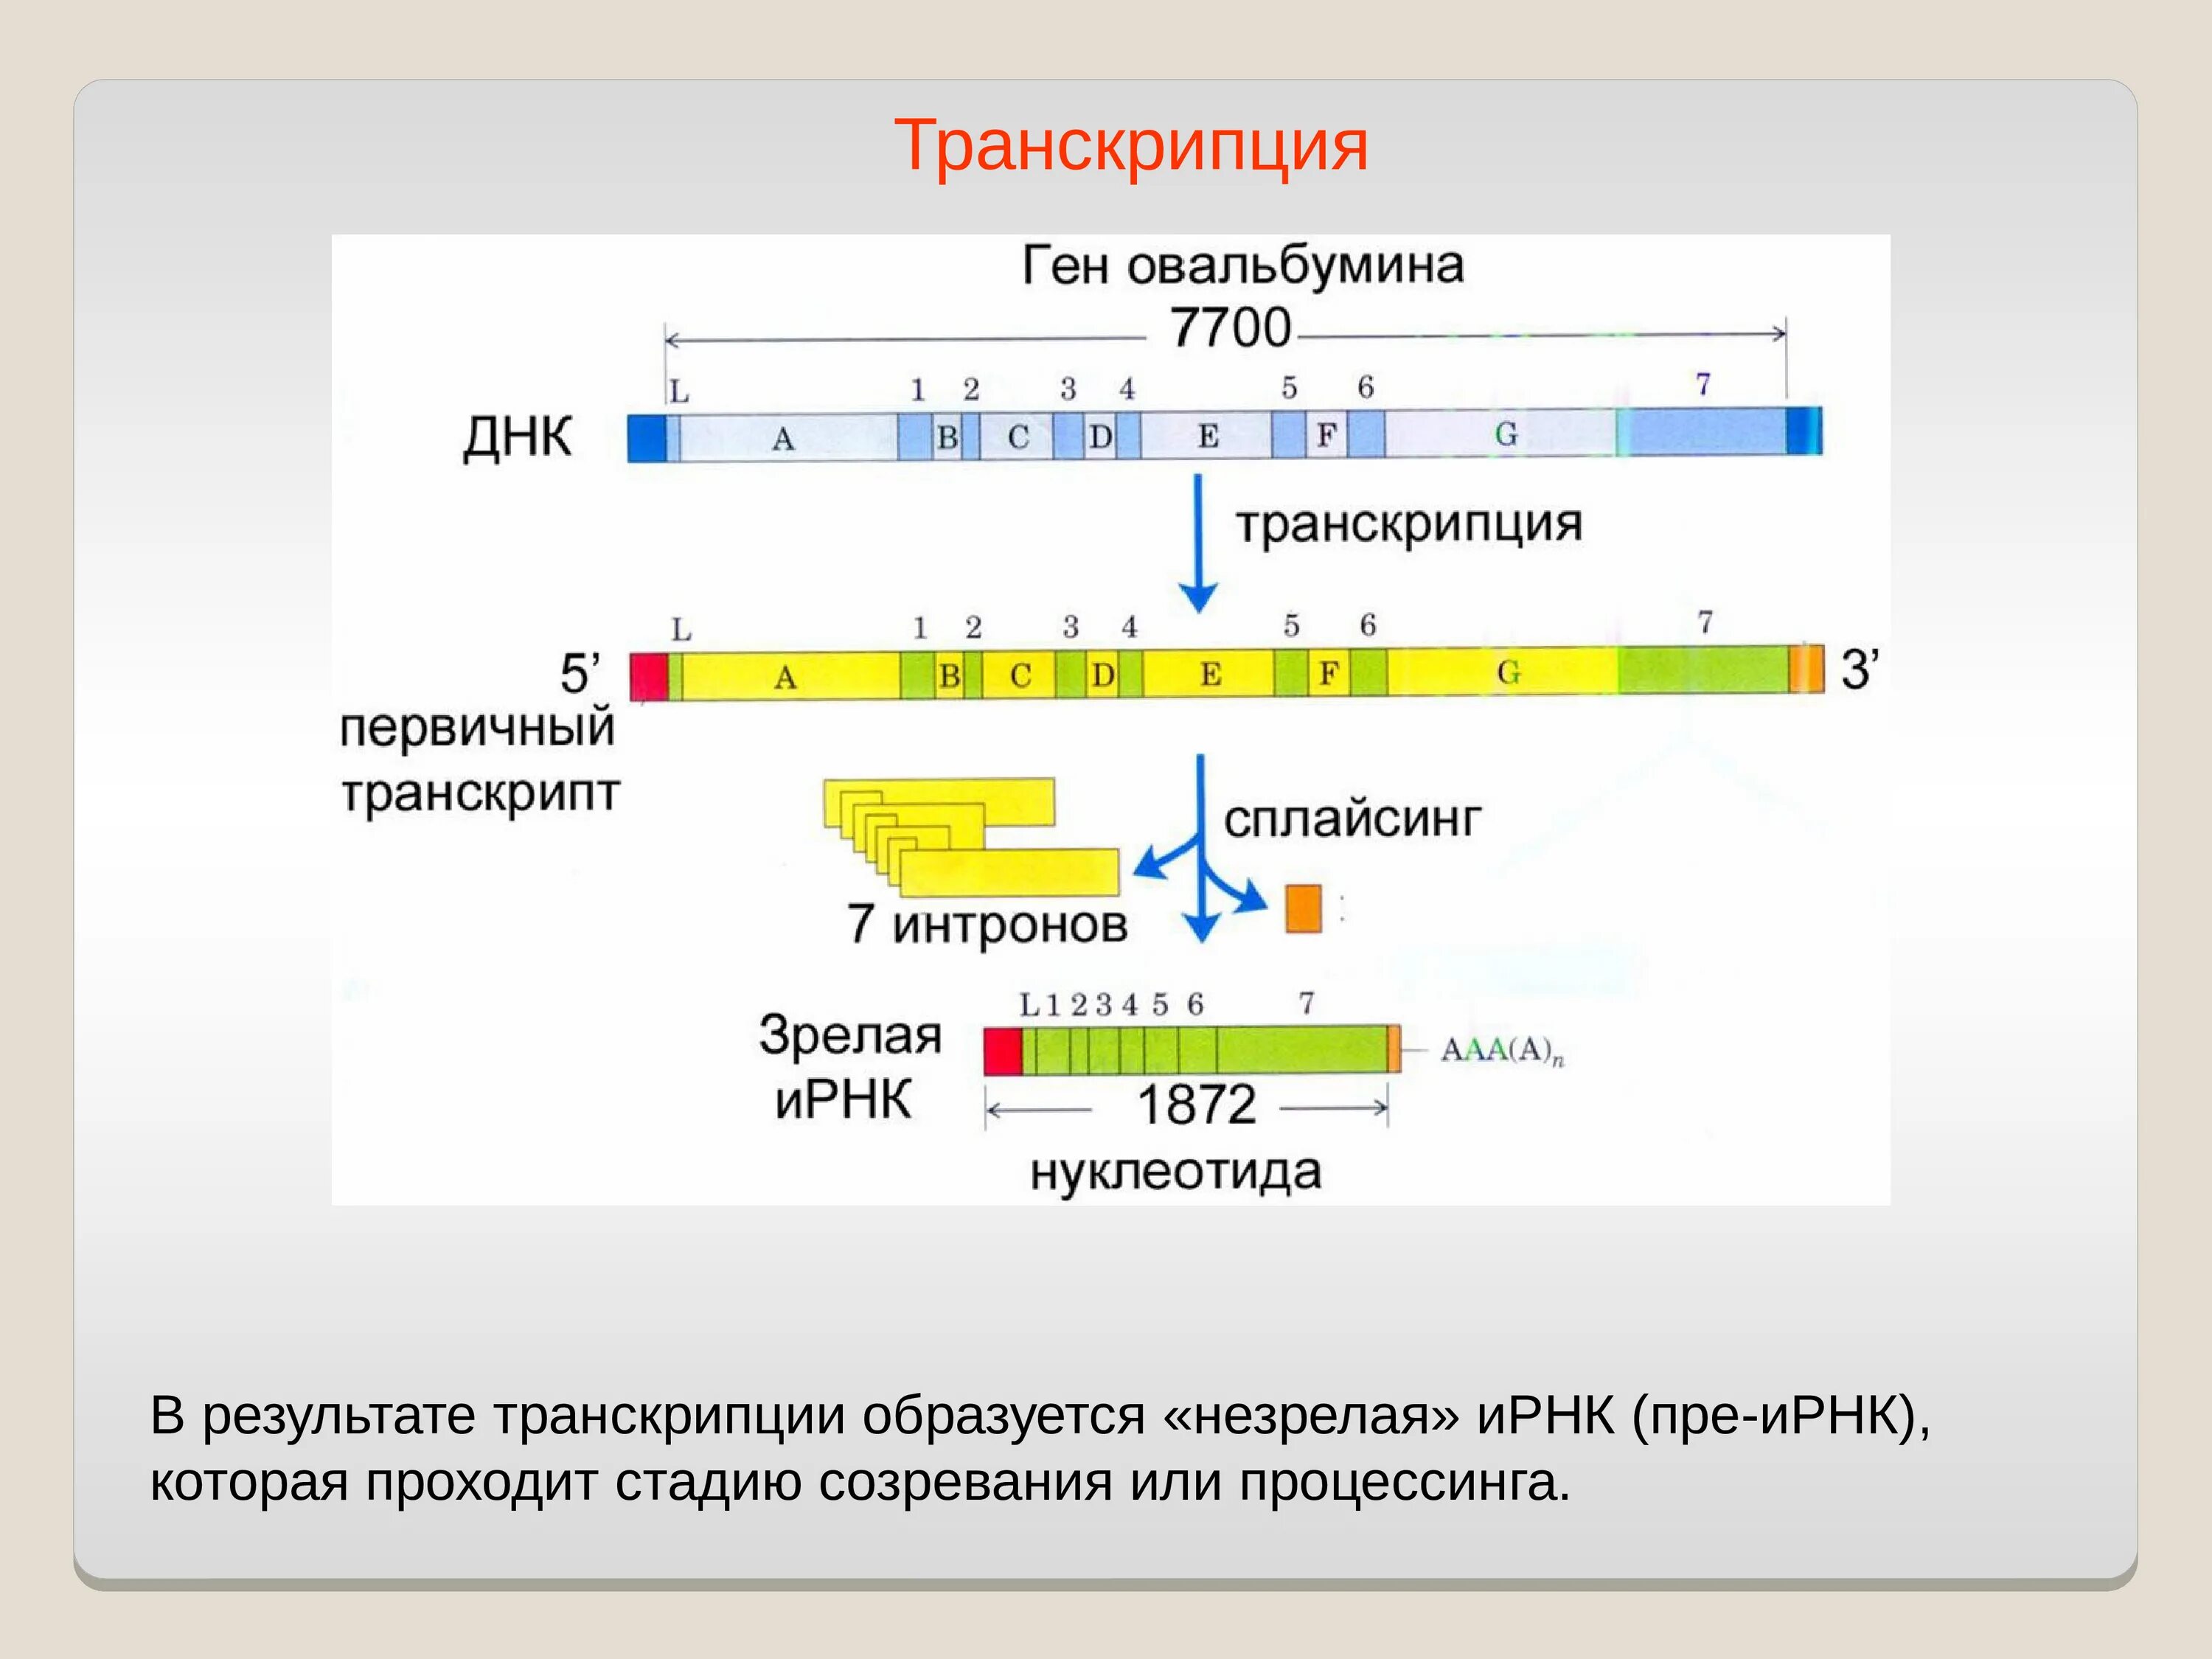 Процессинг РНК этапы. Транскрипция. Транскрипция ДНК. Основной результат транскрипции. Процессинг белка этапы